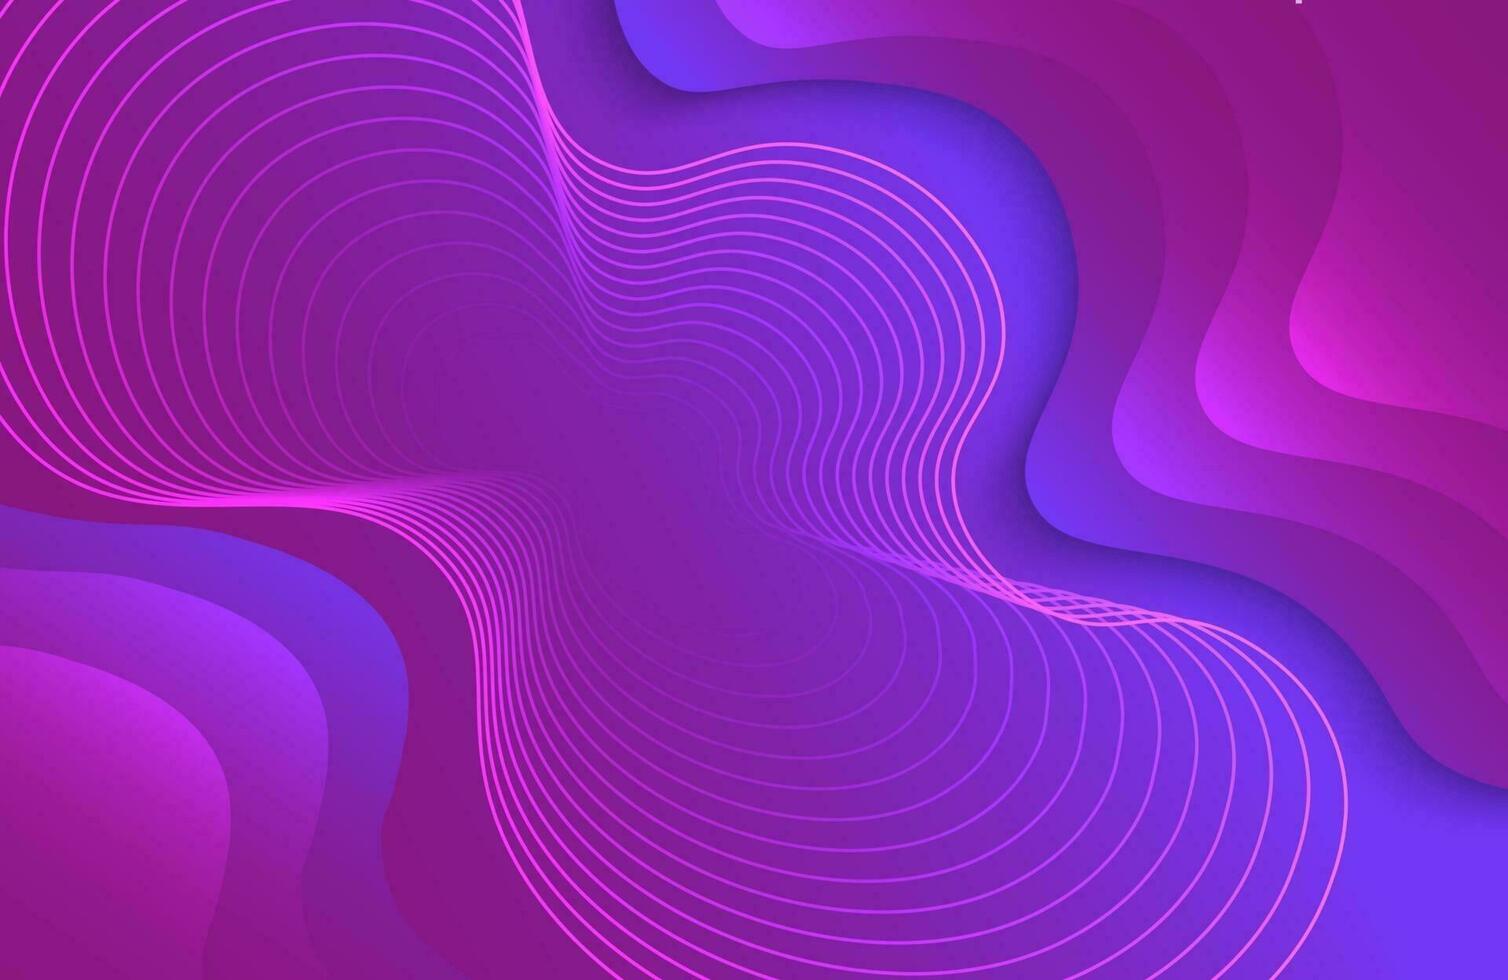 wellige flüssige Form auf abstraktem Hintergrund der trendigen Farbverlaufsfarbe vektor